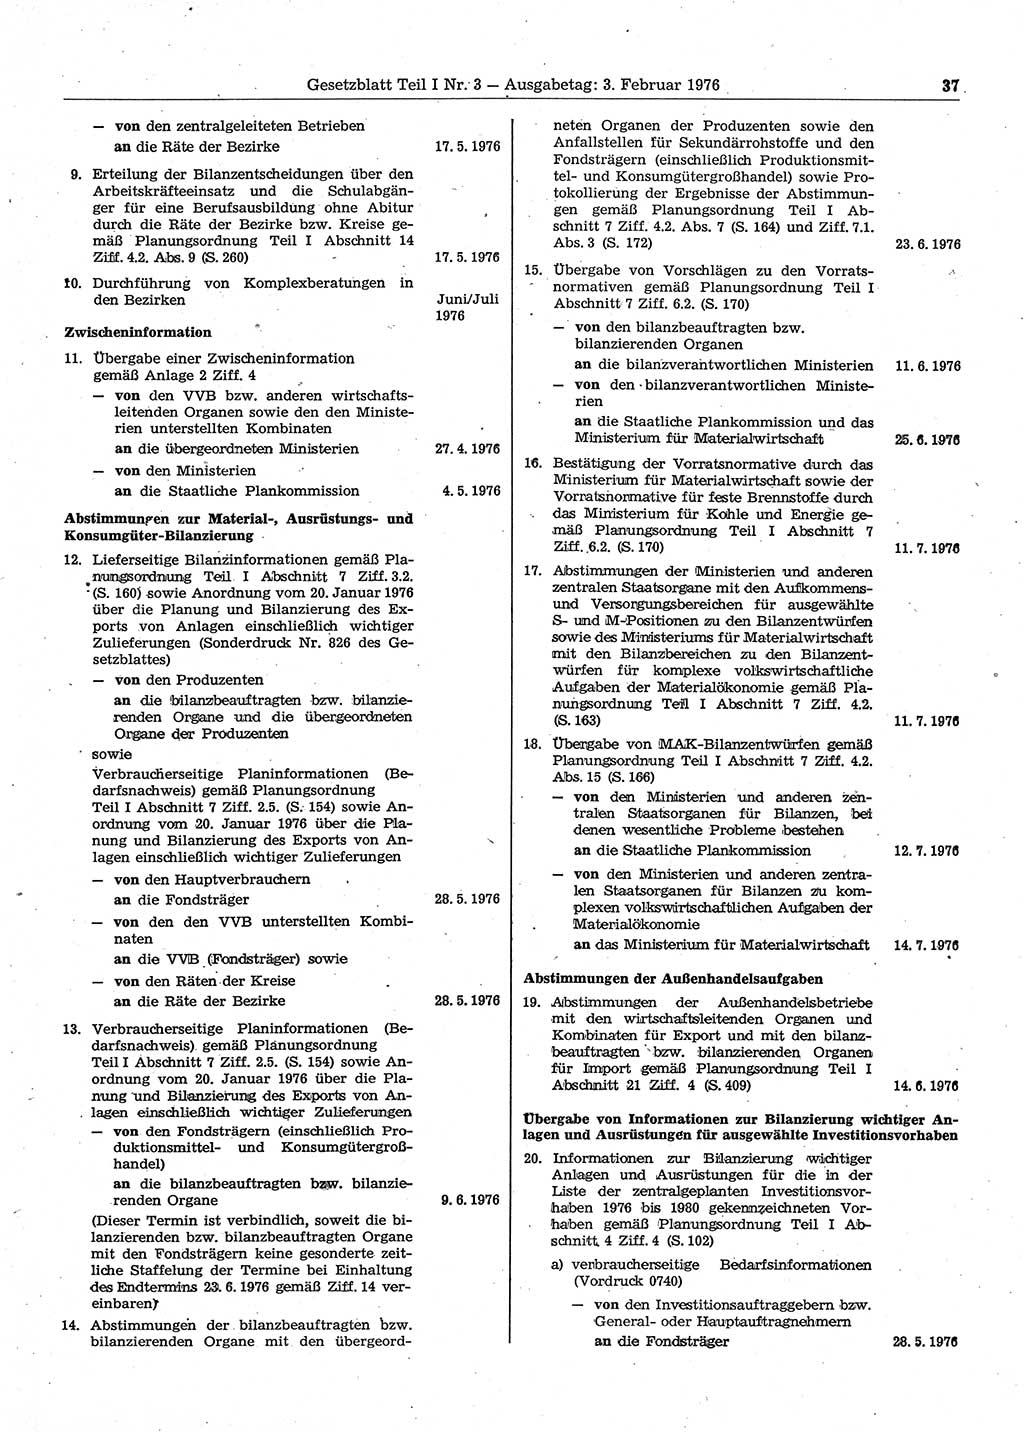 Gesetzblatt (GBl.) der Deutschen Demokratischen Republik (DDR) Teil Ⅰ 1976, Seite 37 (GBl. DDR Ⅰ 1976, S. 37)